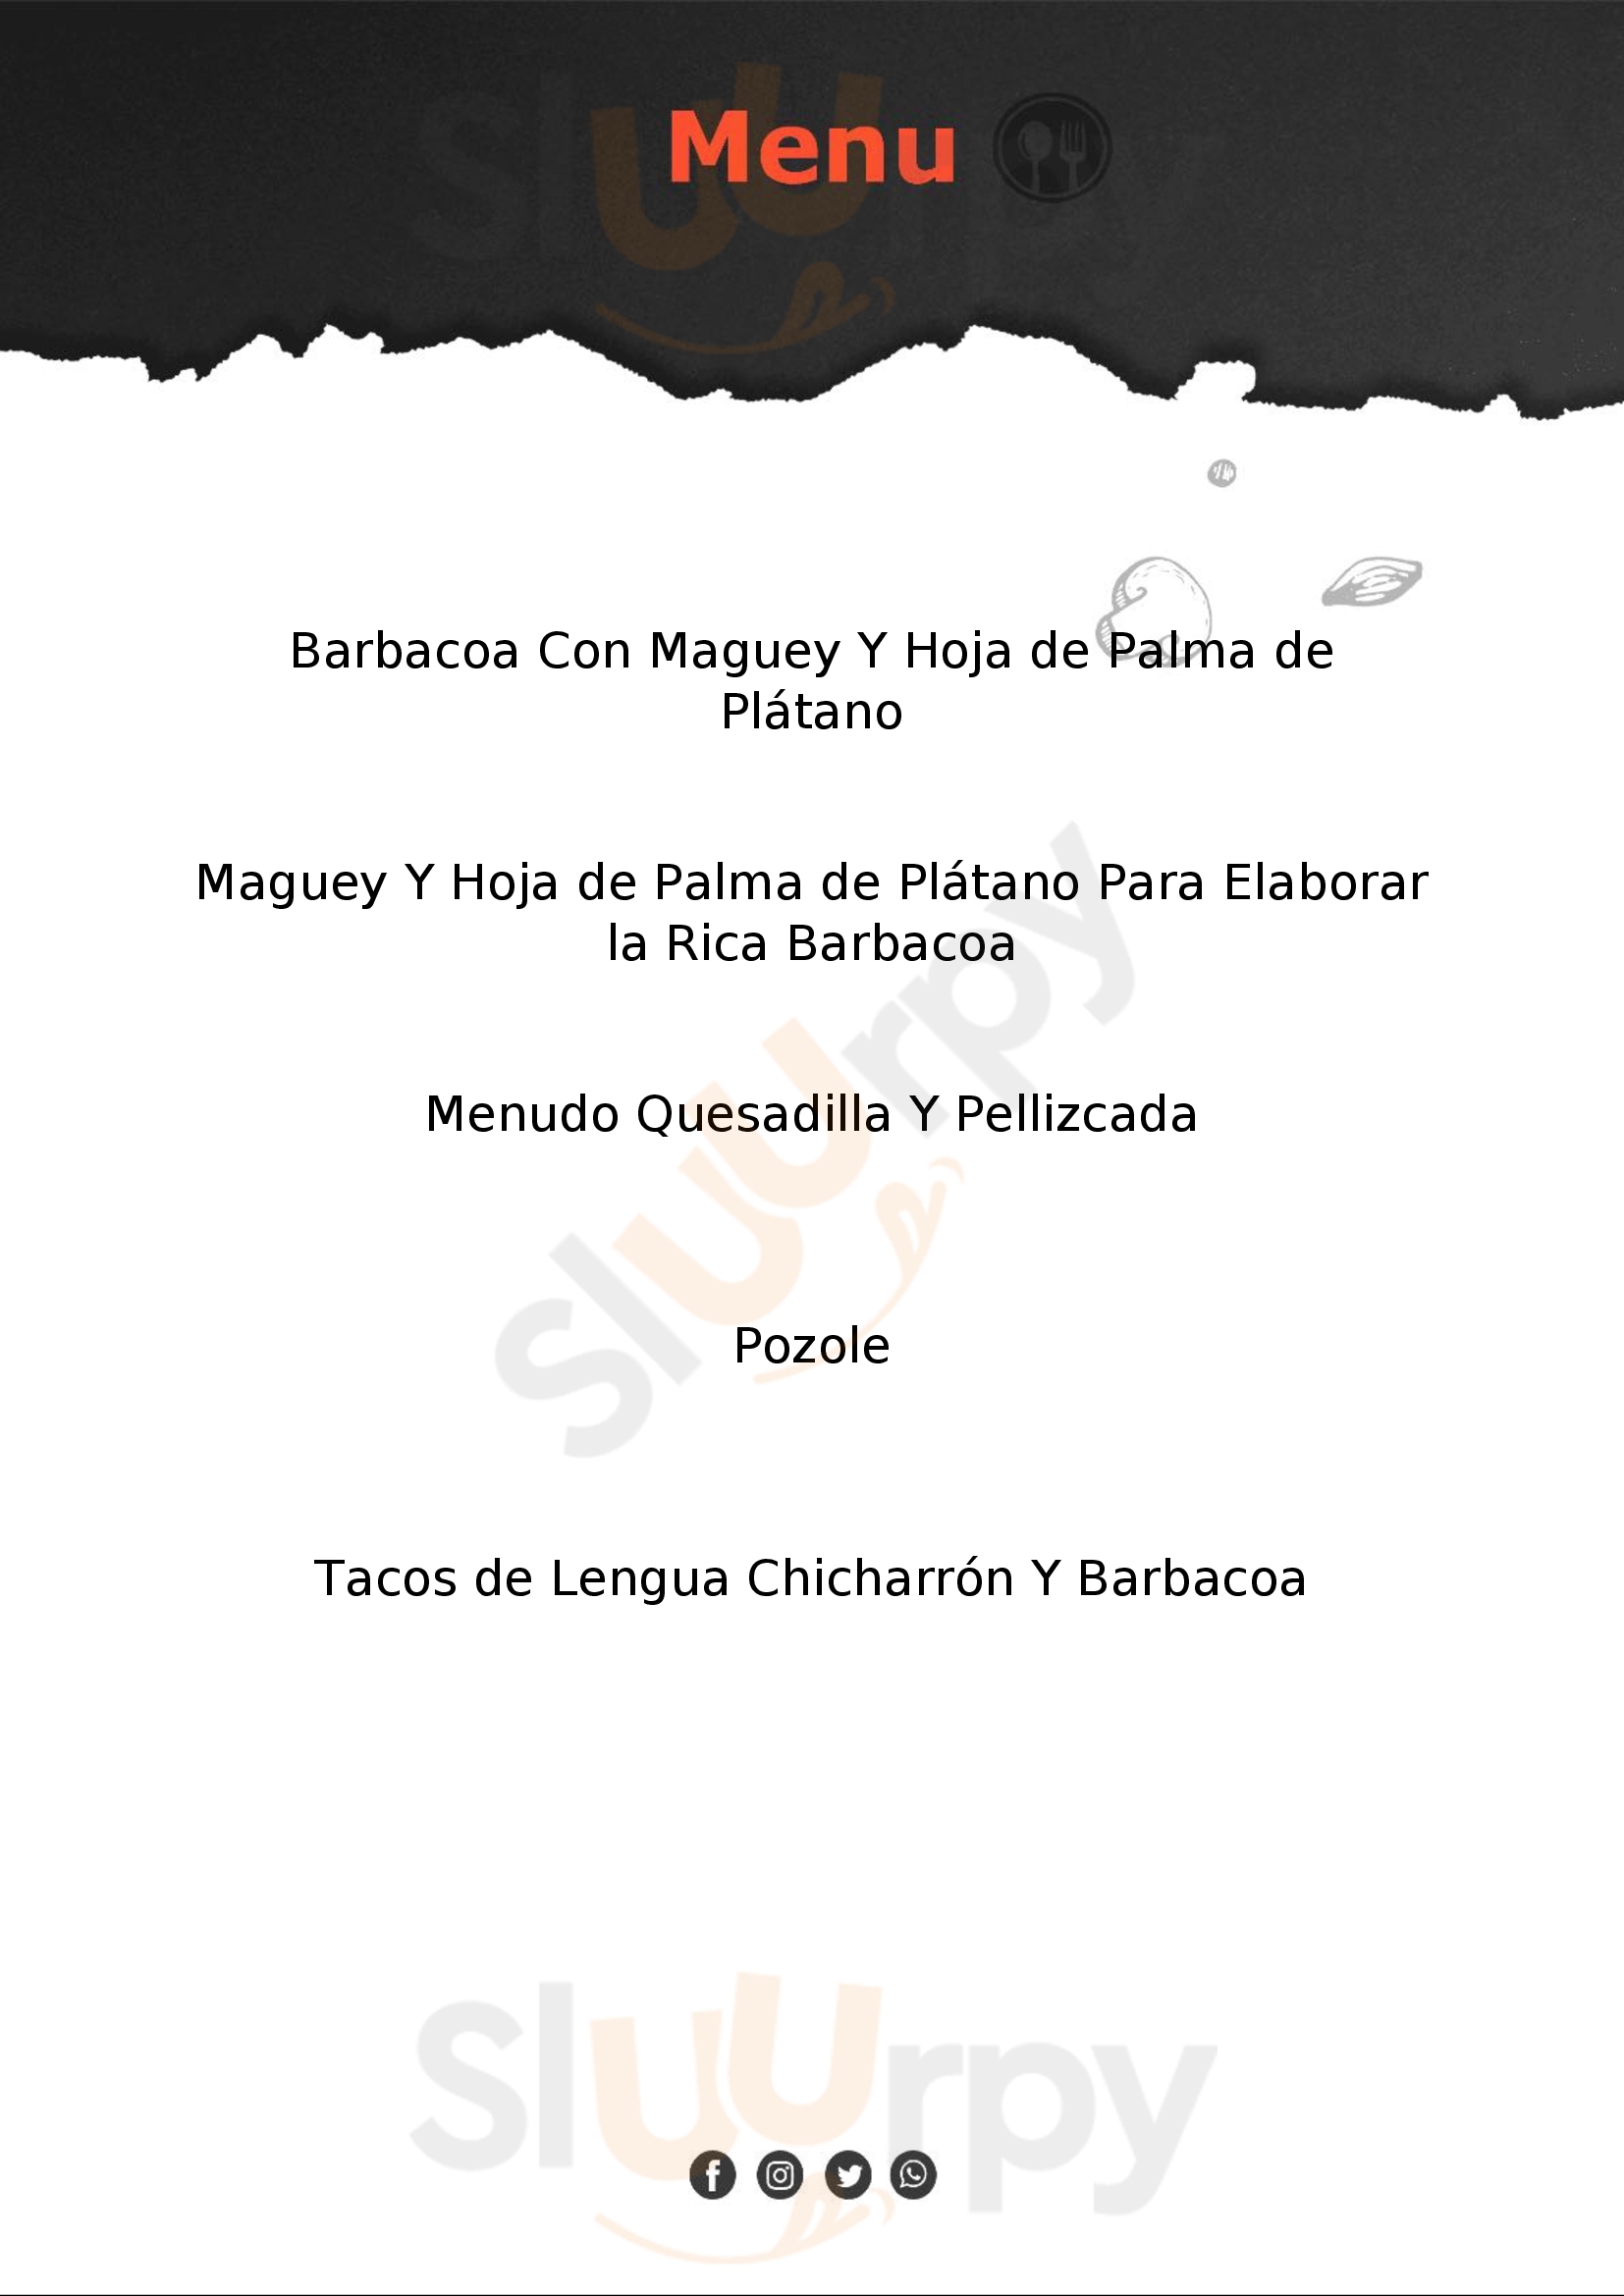 Menudo, Barbacoa Y Guisados El Bocado Del Chef Guadalajara Menu - 1